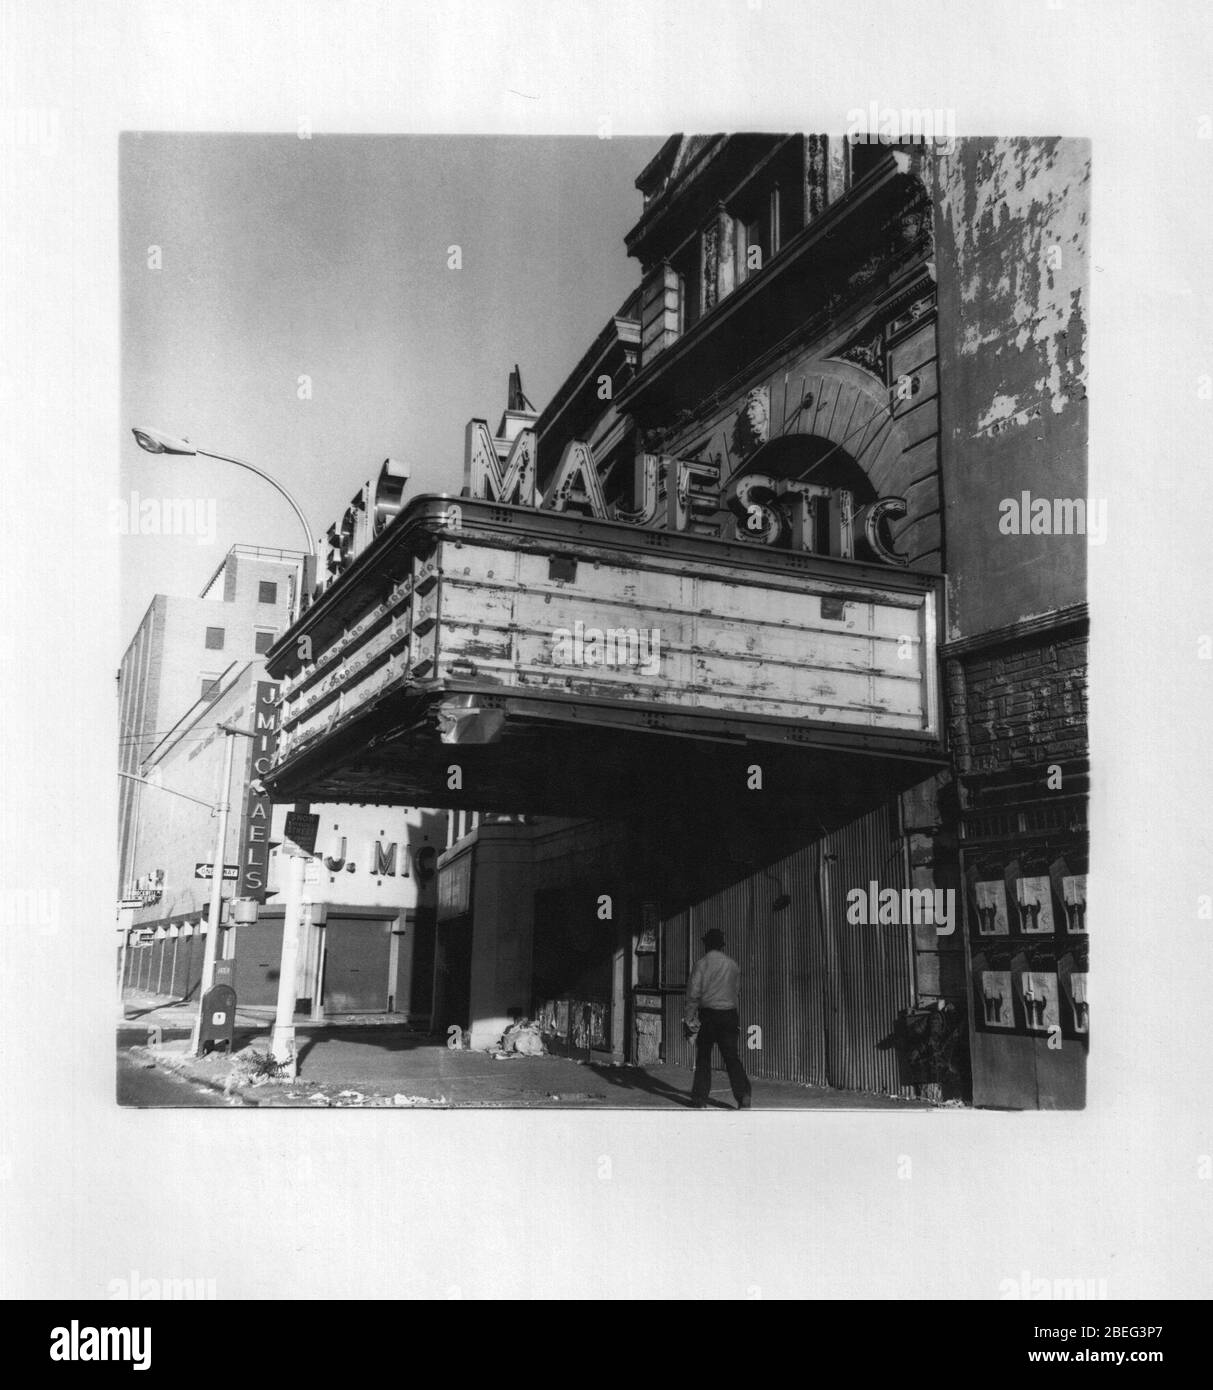 Majestic Theatre in der Fulton Street im Fort Greene Viertel von Brooklyn in New York im Jahr 1975. Das Theater wurde 1987 renoviert und ist heute das Harvey Theater in BAM. (© Richard B. Levine) Stockfoto